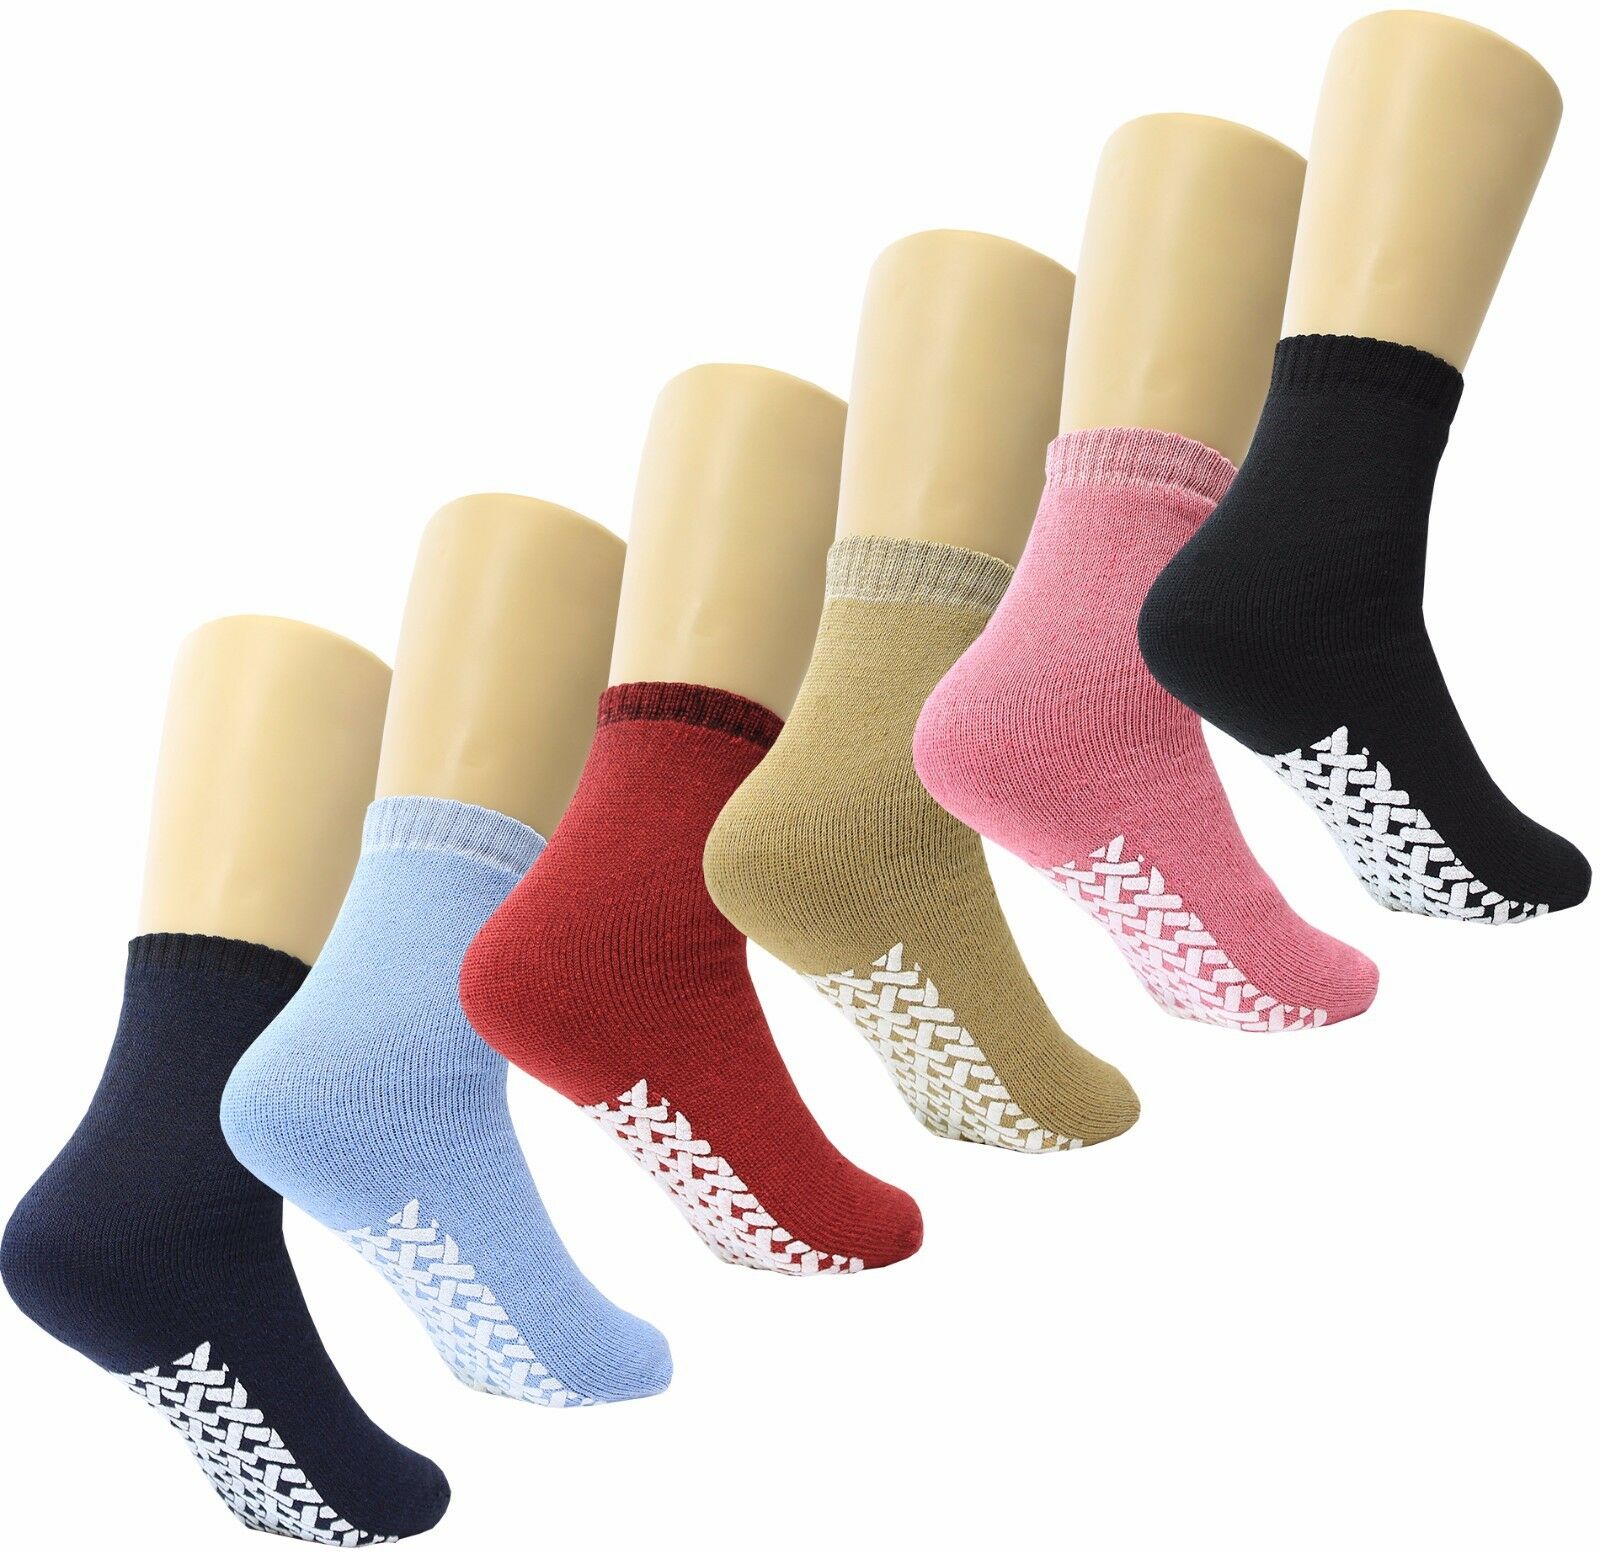 Non Skid / Slip Socks With Gripper Bottom - Hospital Patient Socks - 6 Pack